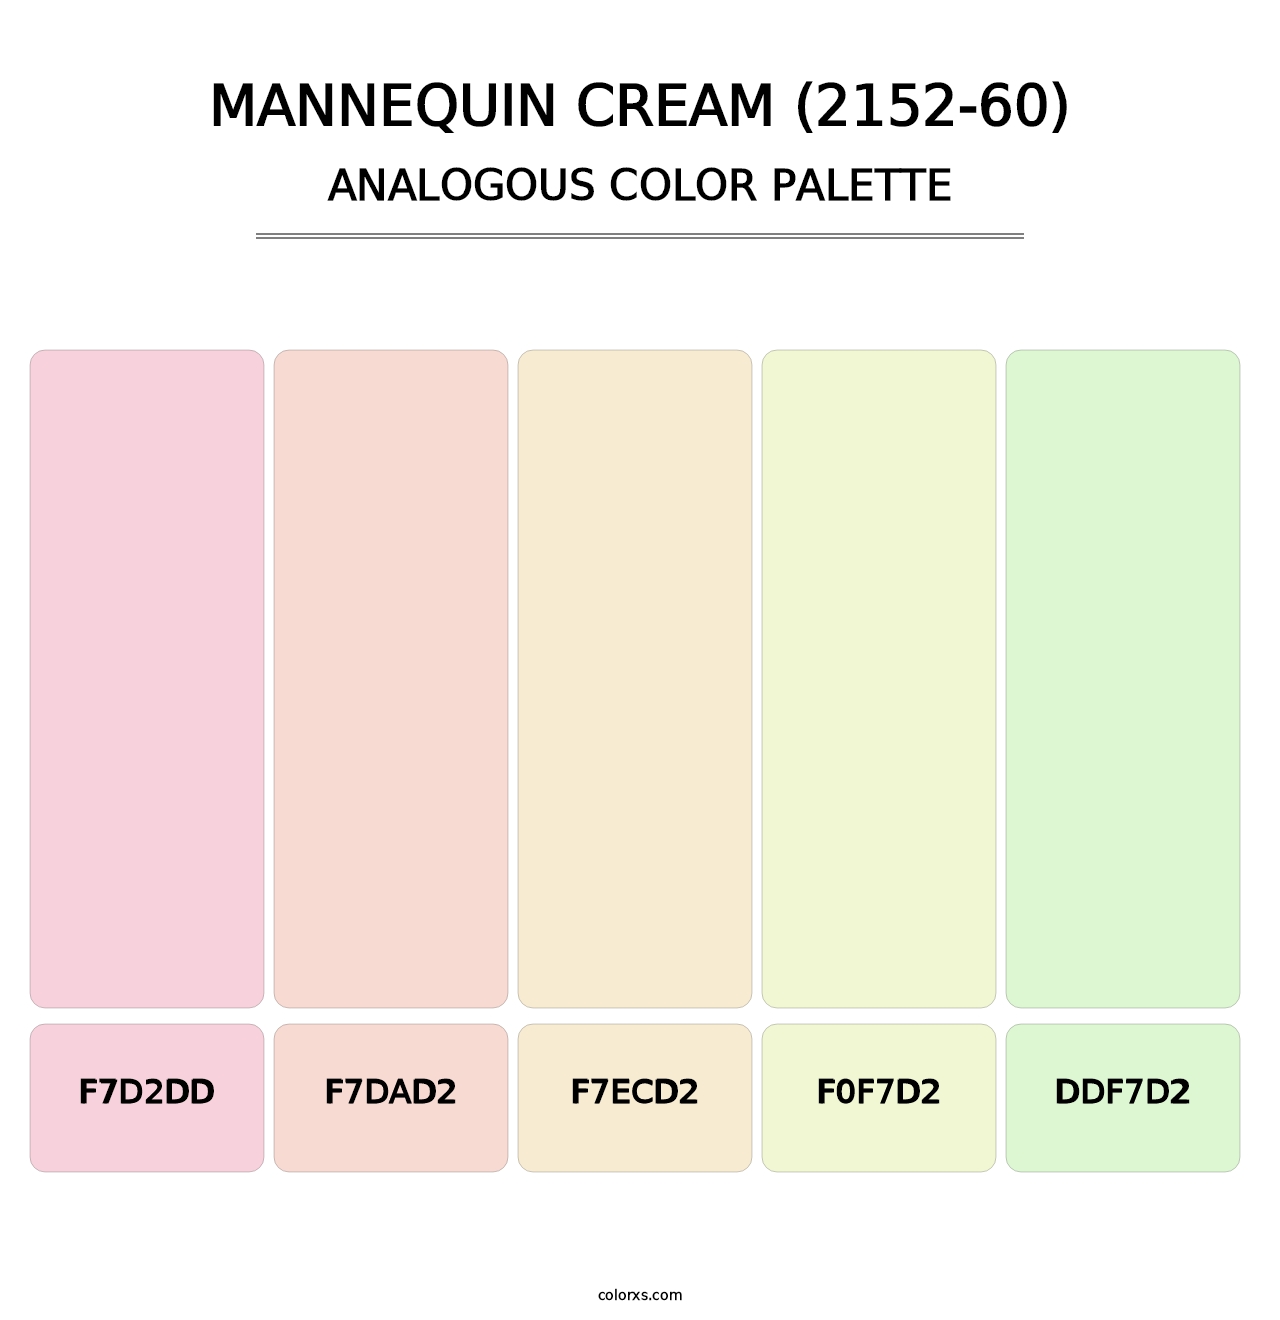 Mannequin Cream (2152-60) - Analogous Color Palette